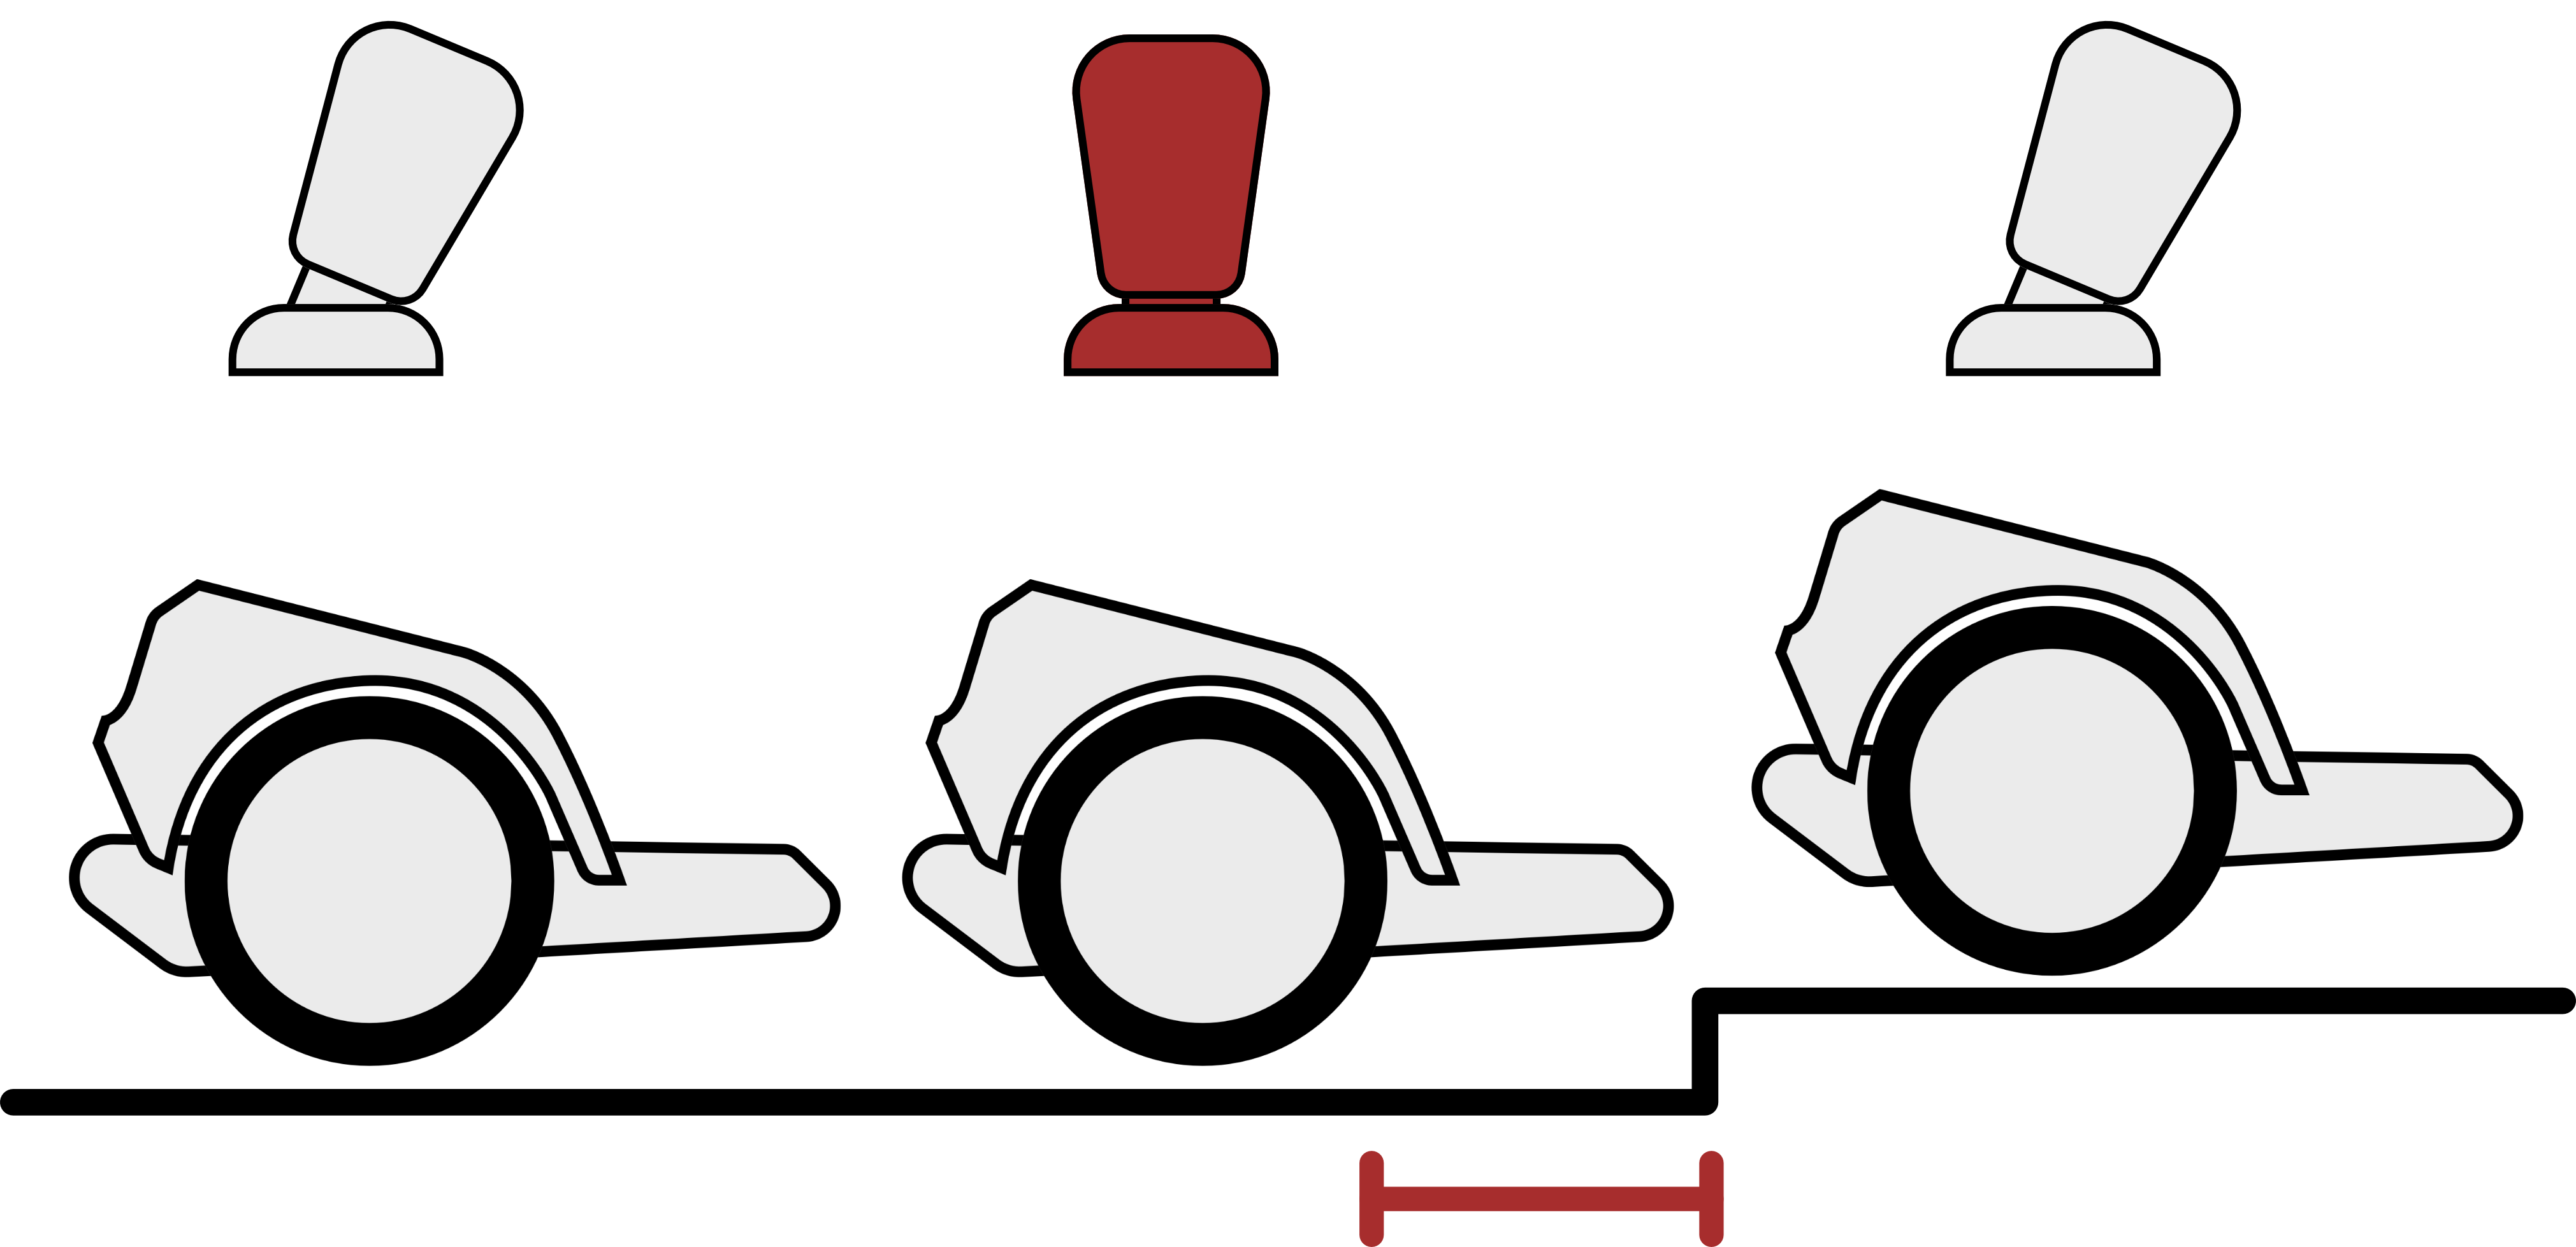 Alzare le soglie: poco prima che la ruota principale raggiunga la soglia, il joystick dovrebbe essere portato brevemente in posizione centrale.